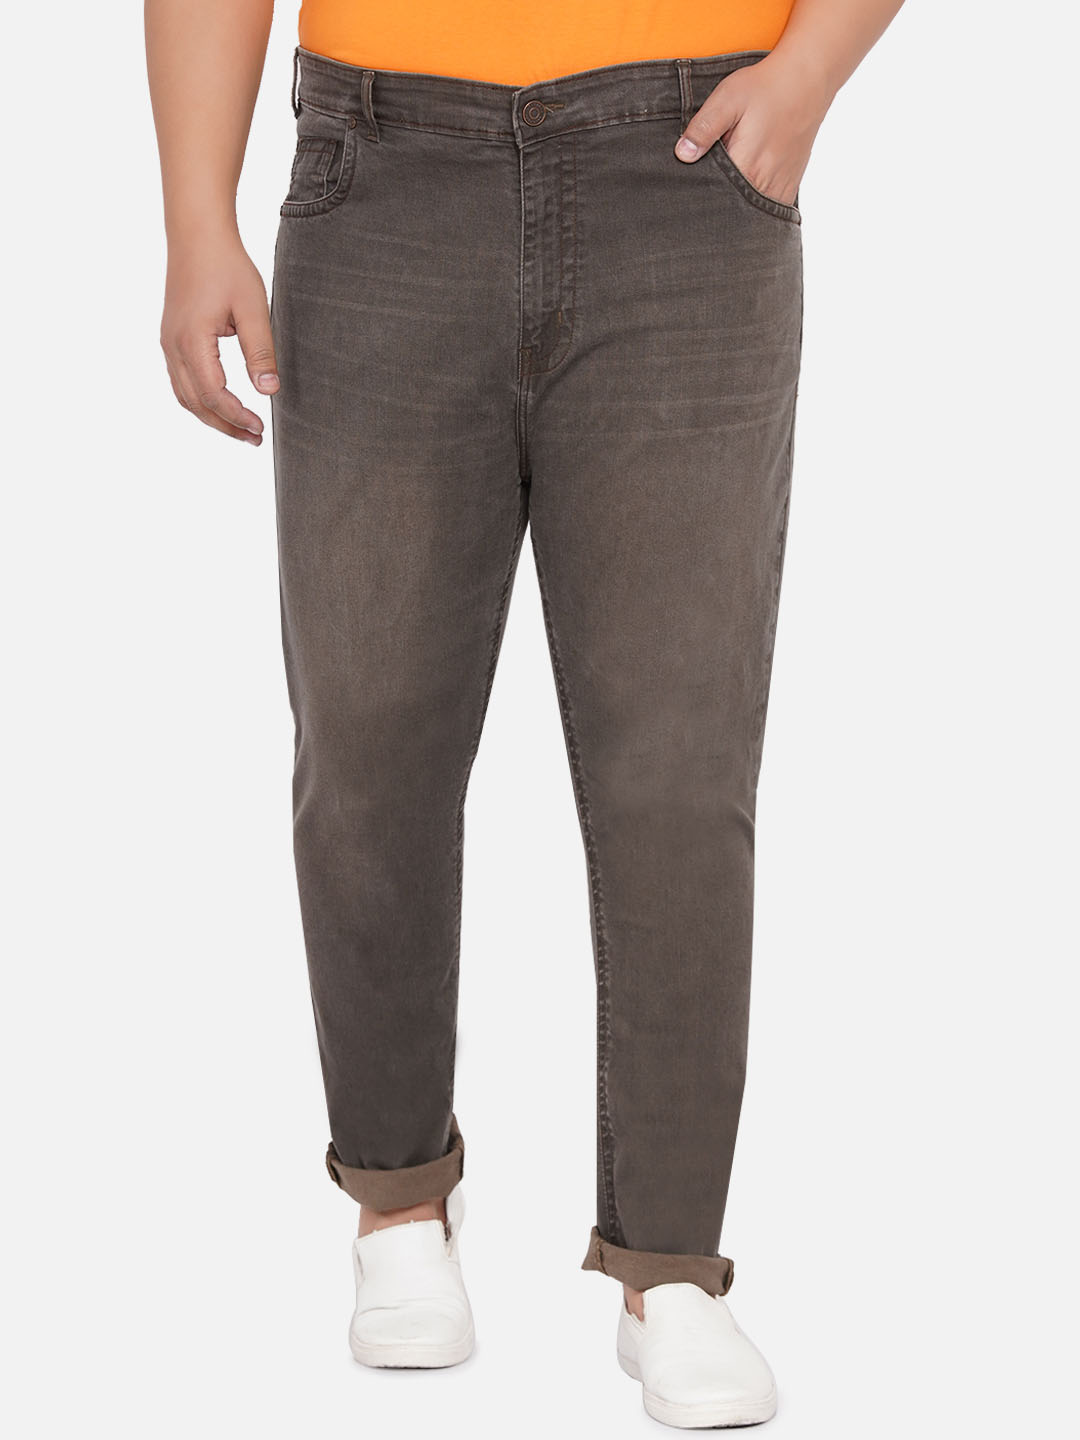 bottomwear/jeans/JPJ12259/jpj12259-1.jpg